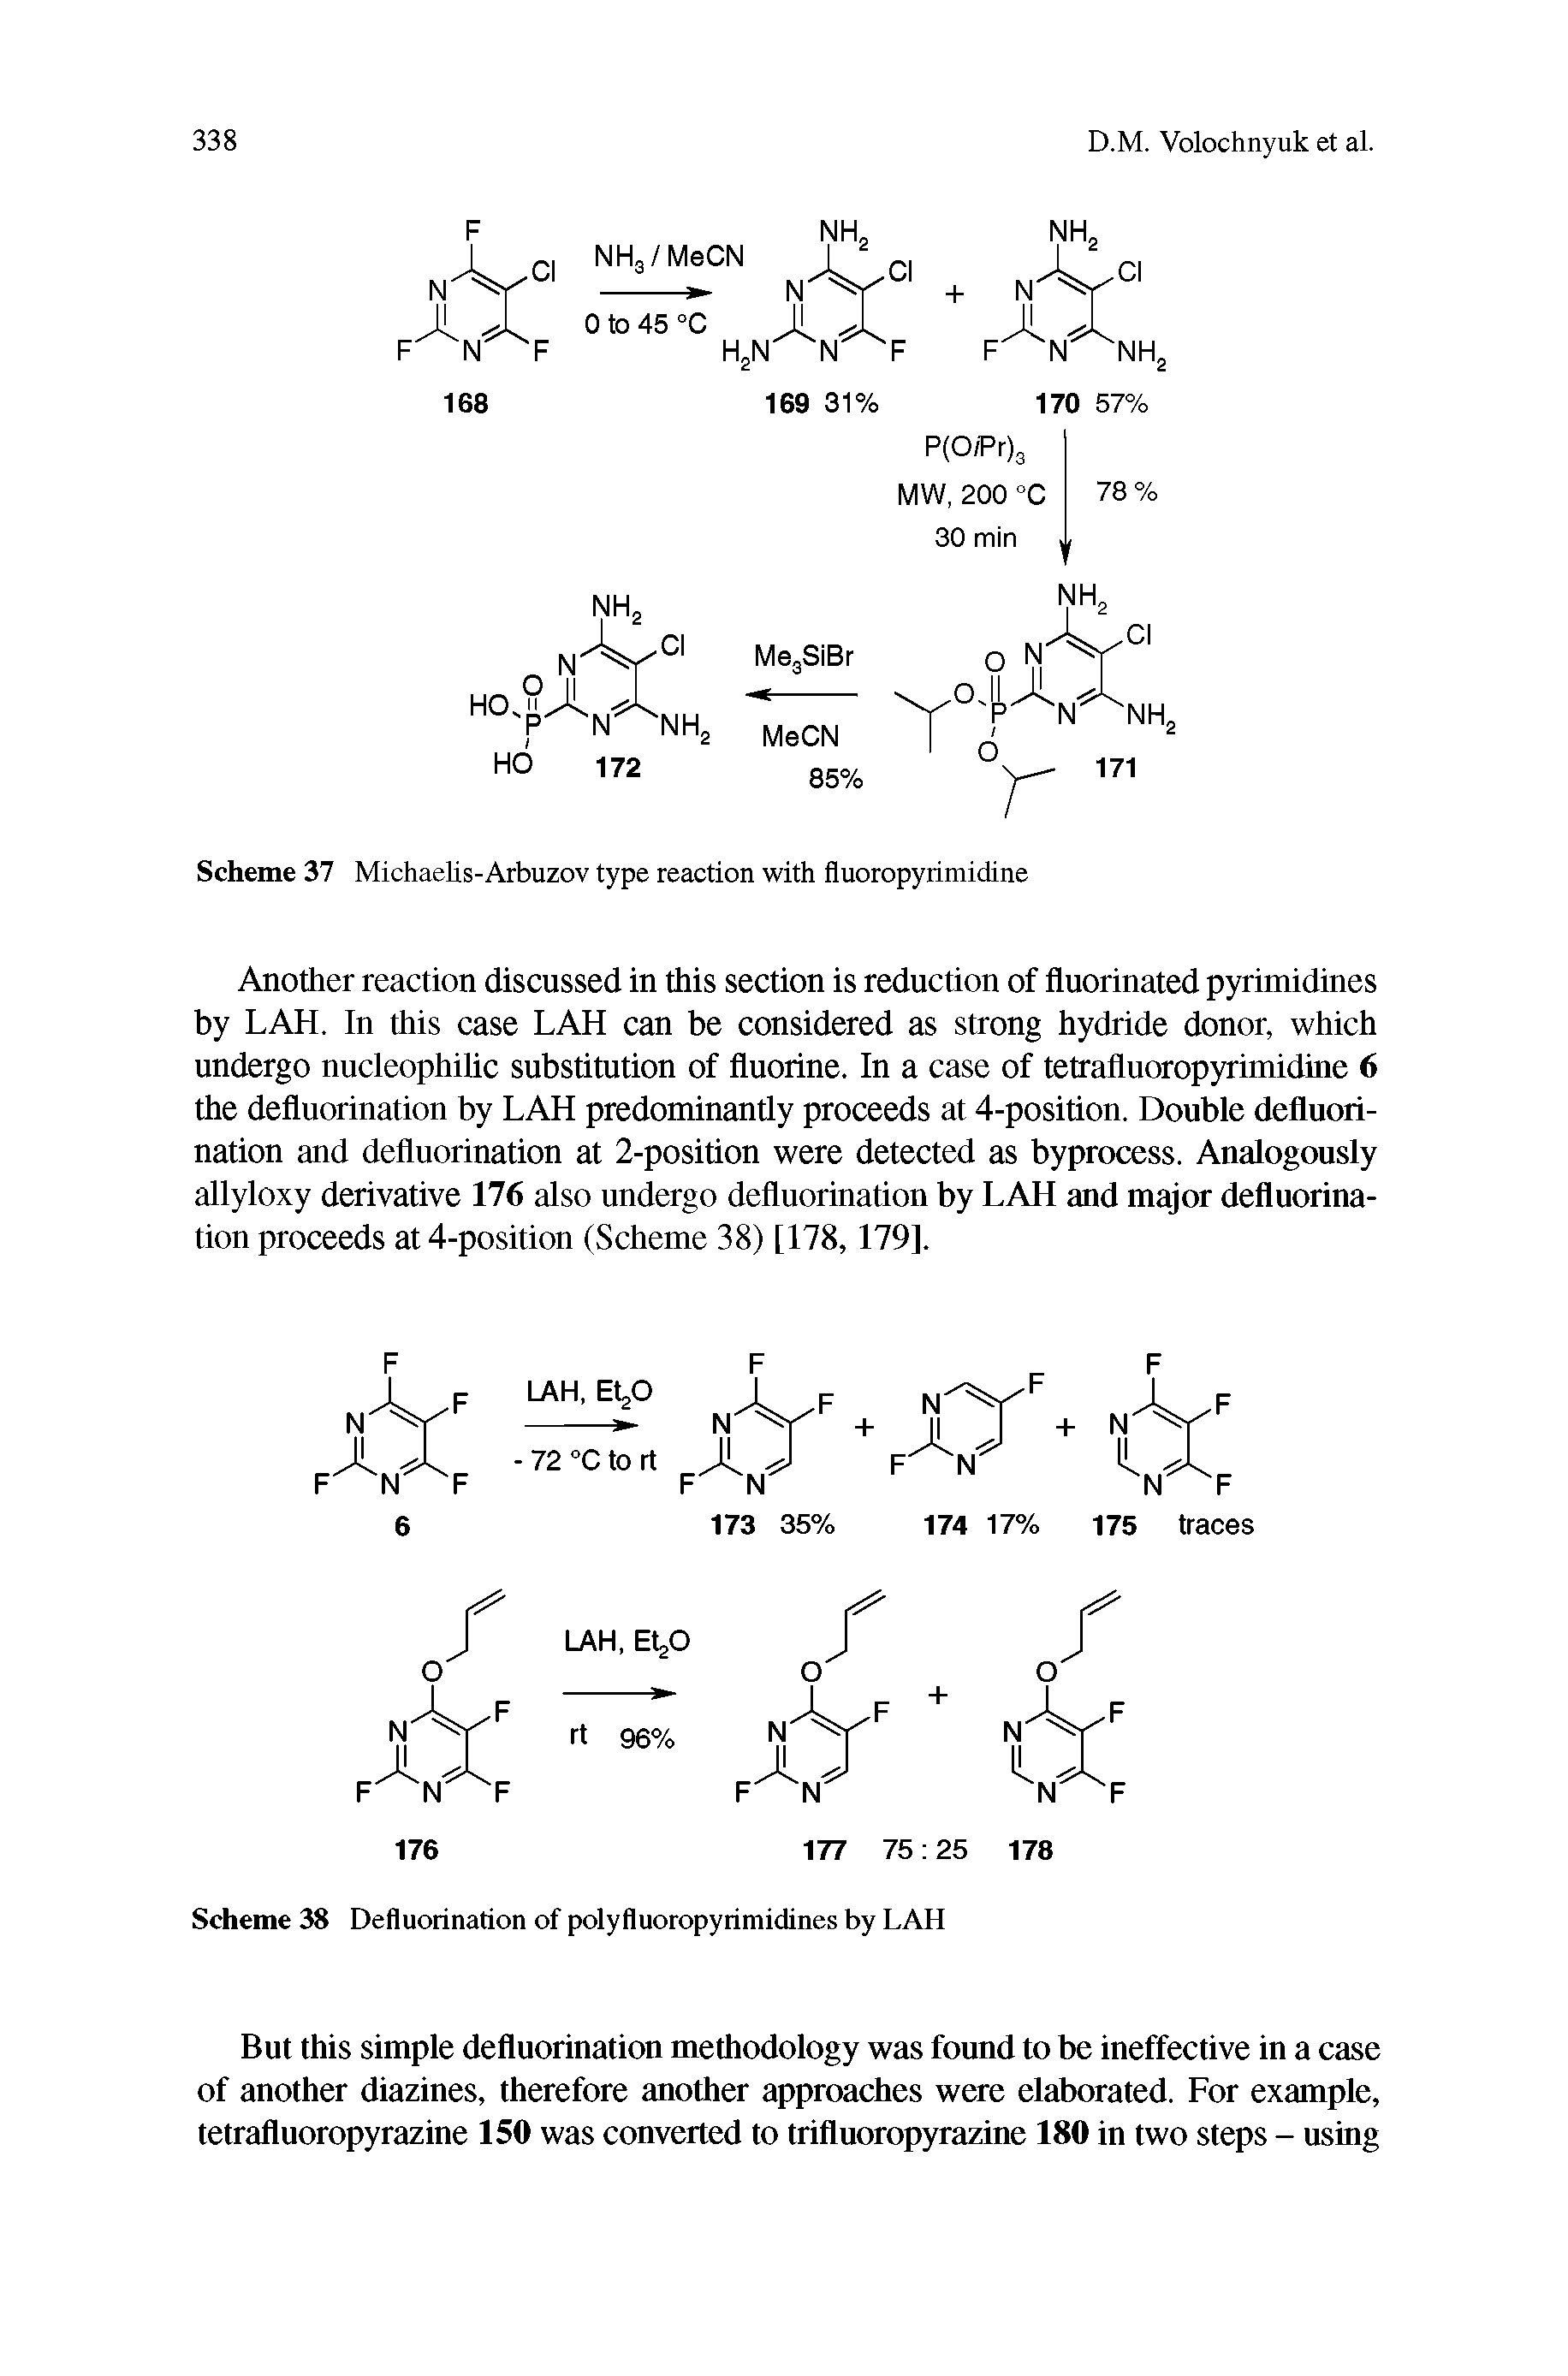 Scheme 37 Michaelis-Arbuzov type reaction with fluoropyrimidine...